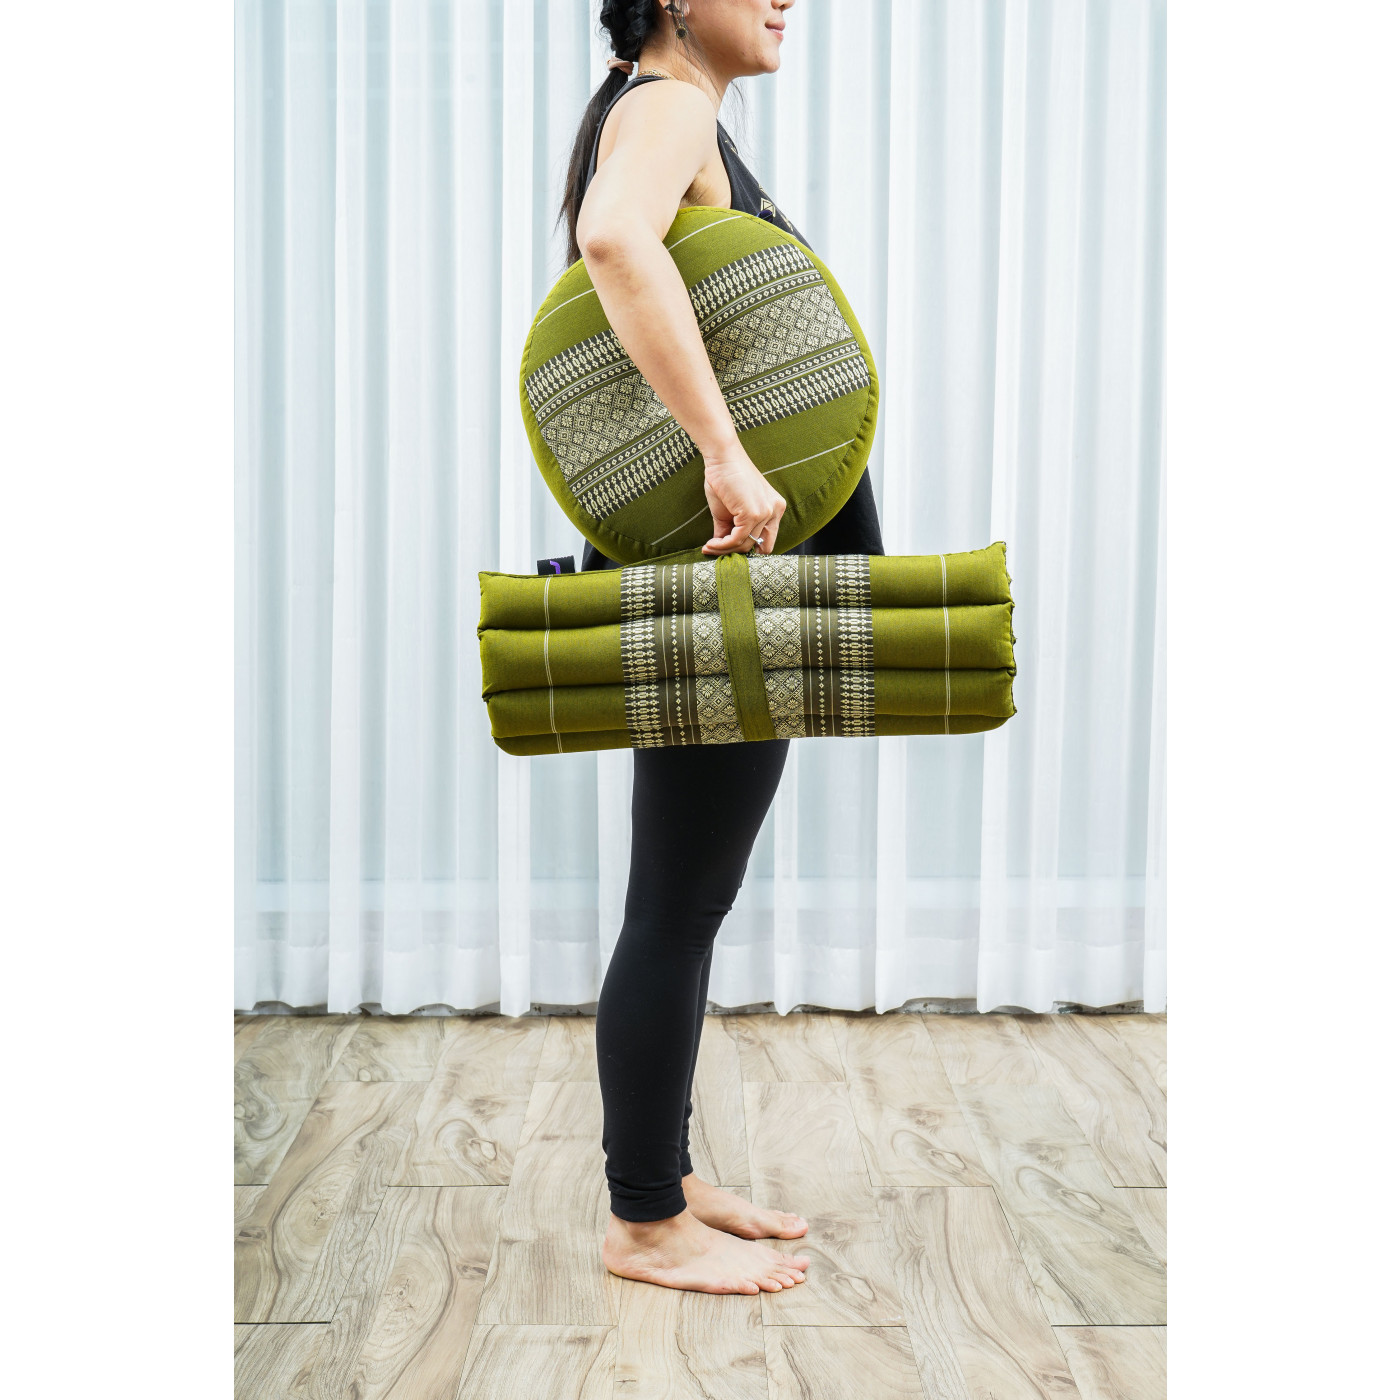 Leewadee Meditation Cushion Set – 1 Small Zafu Yoga Pillow and 1 Small  Roll-Up Zabuton Mat